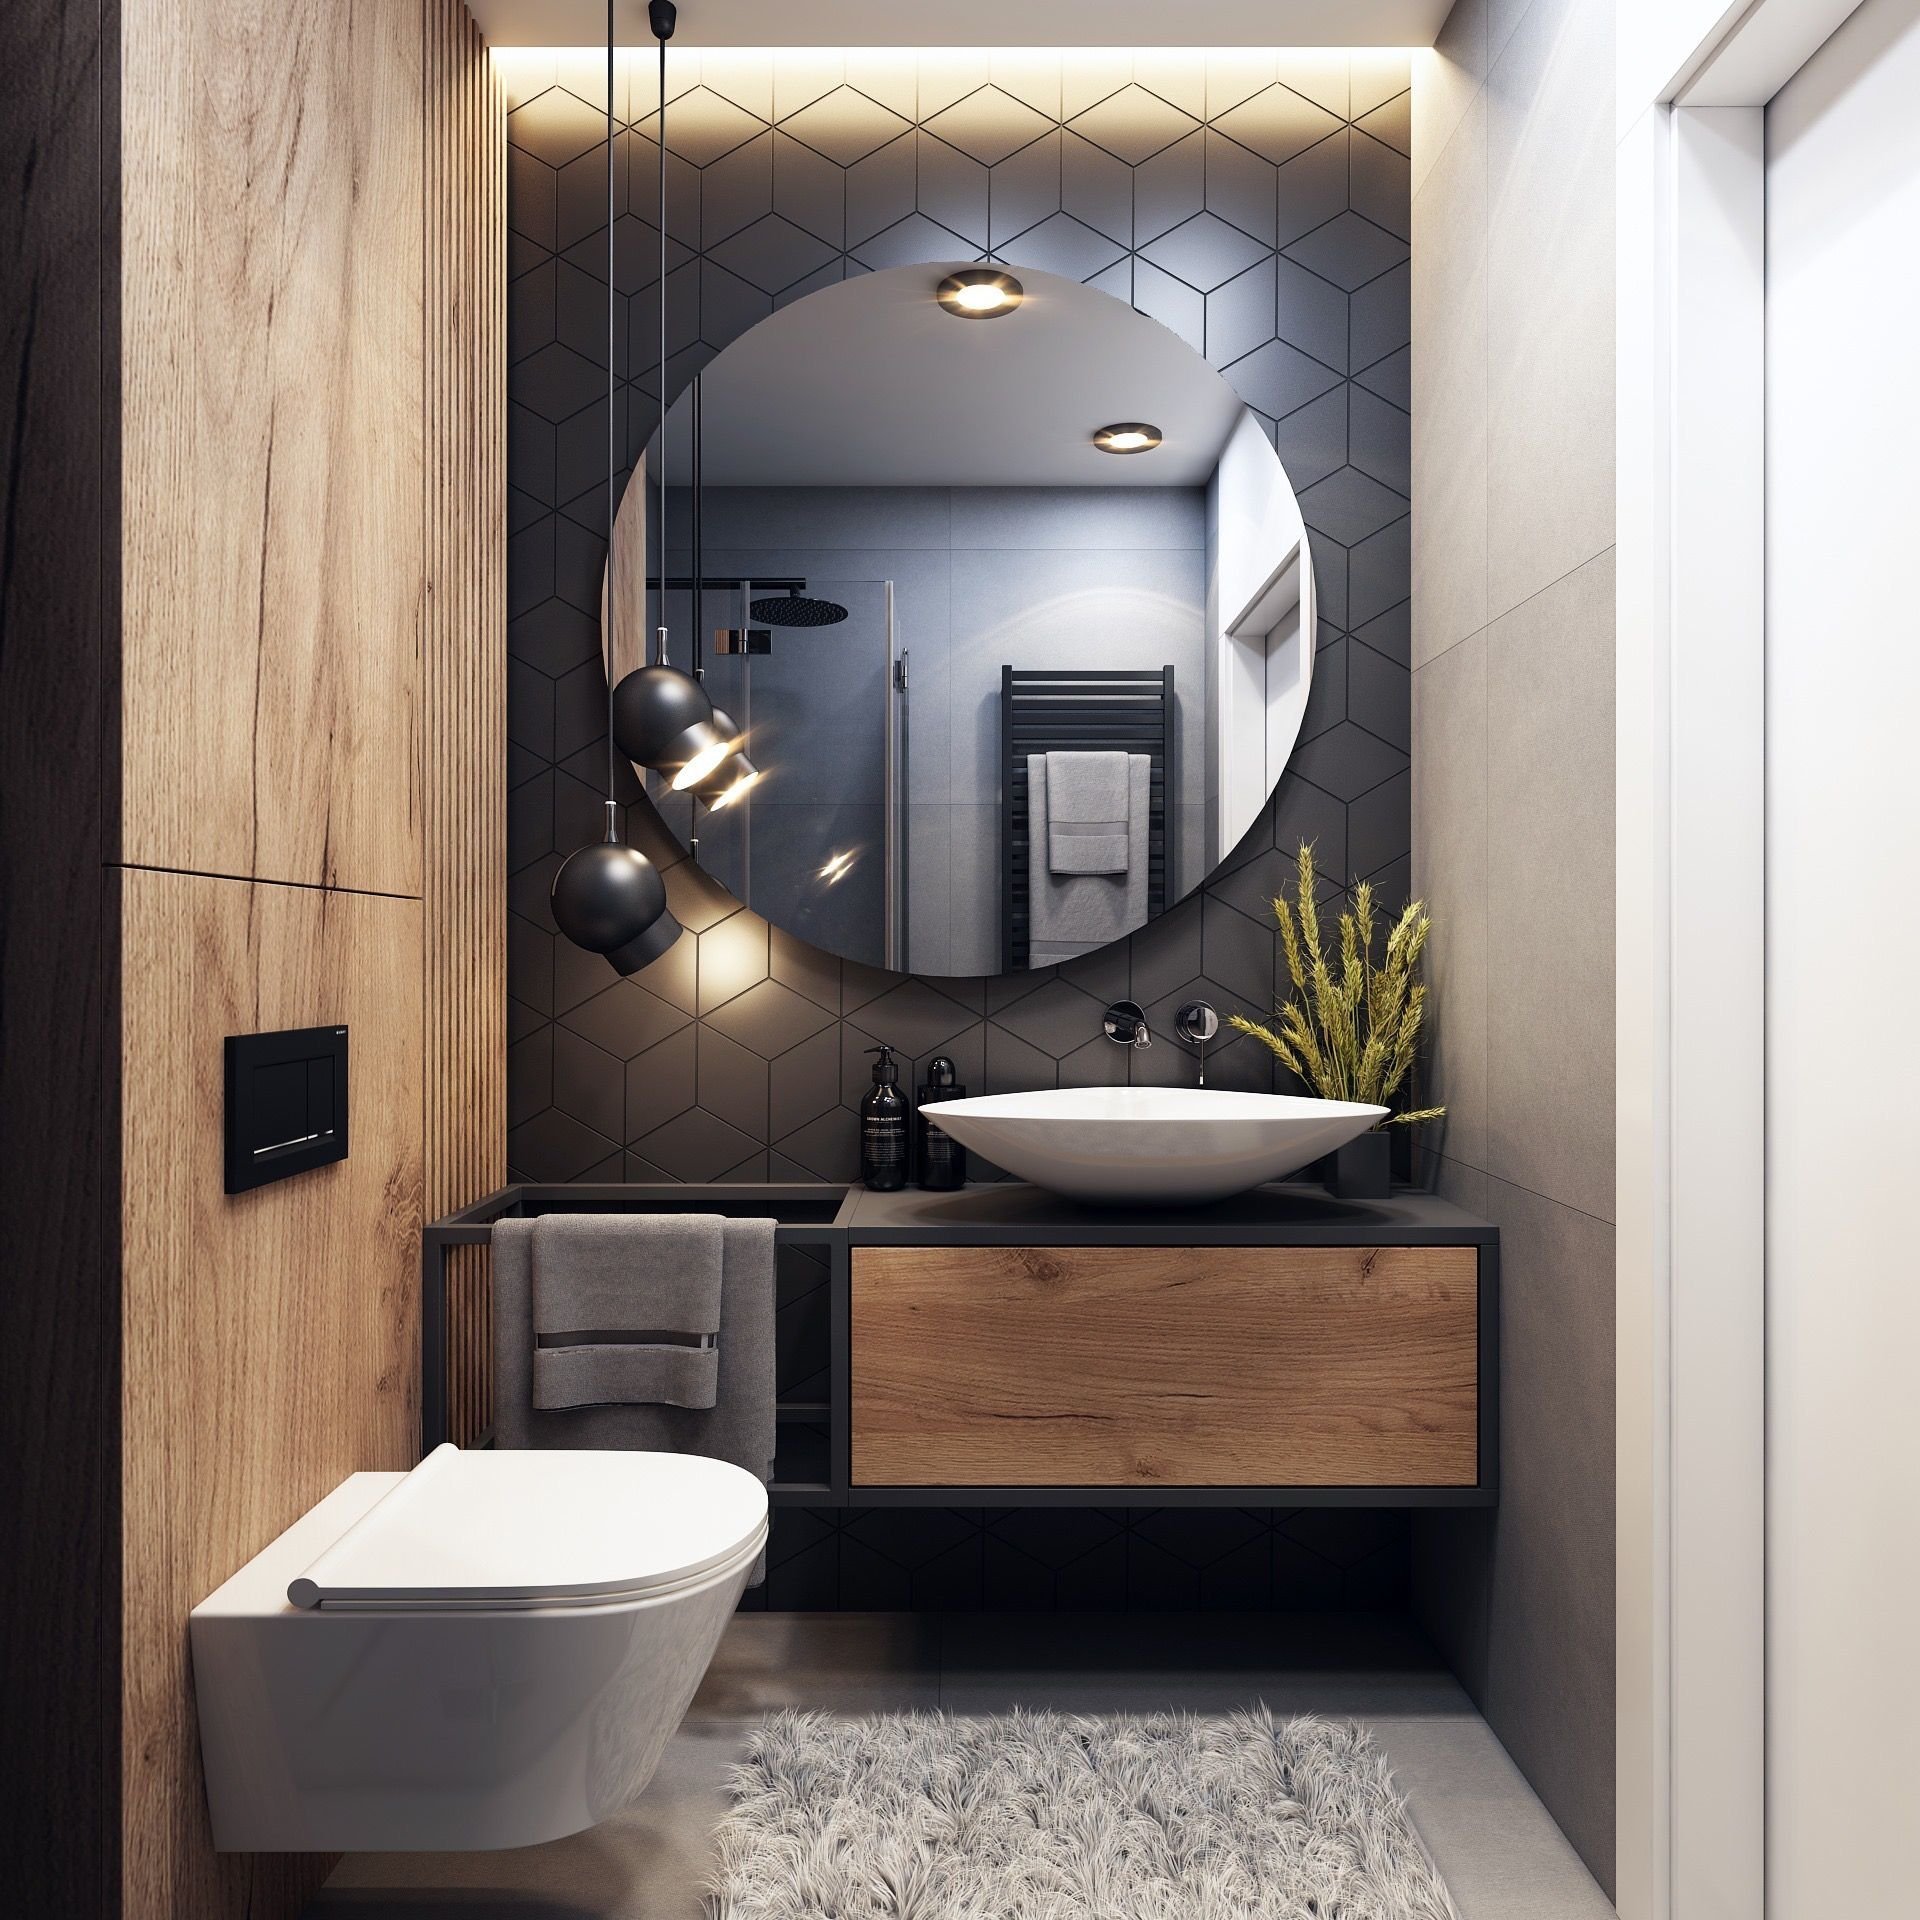 Интерьер туалета маленького размера: особенности, дизайн, цвет, стиль, 100+ фото